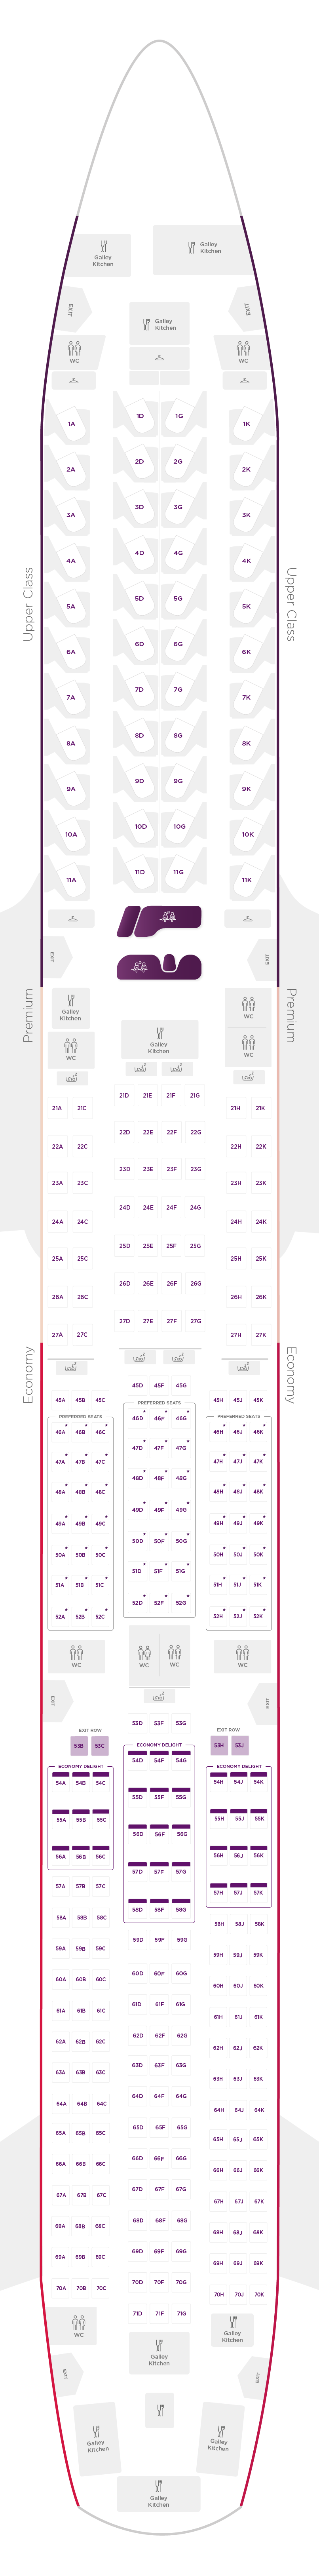 Virgin A380 Seating Plan